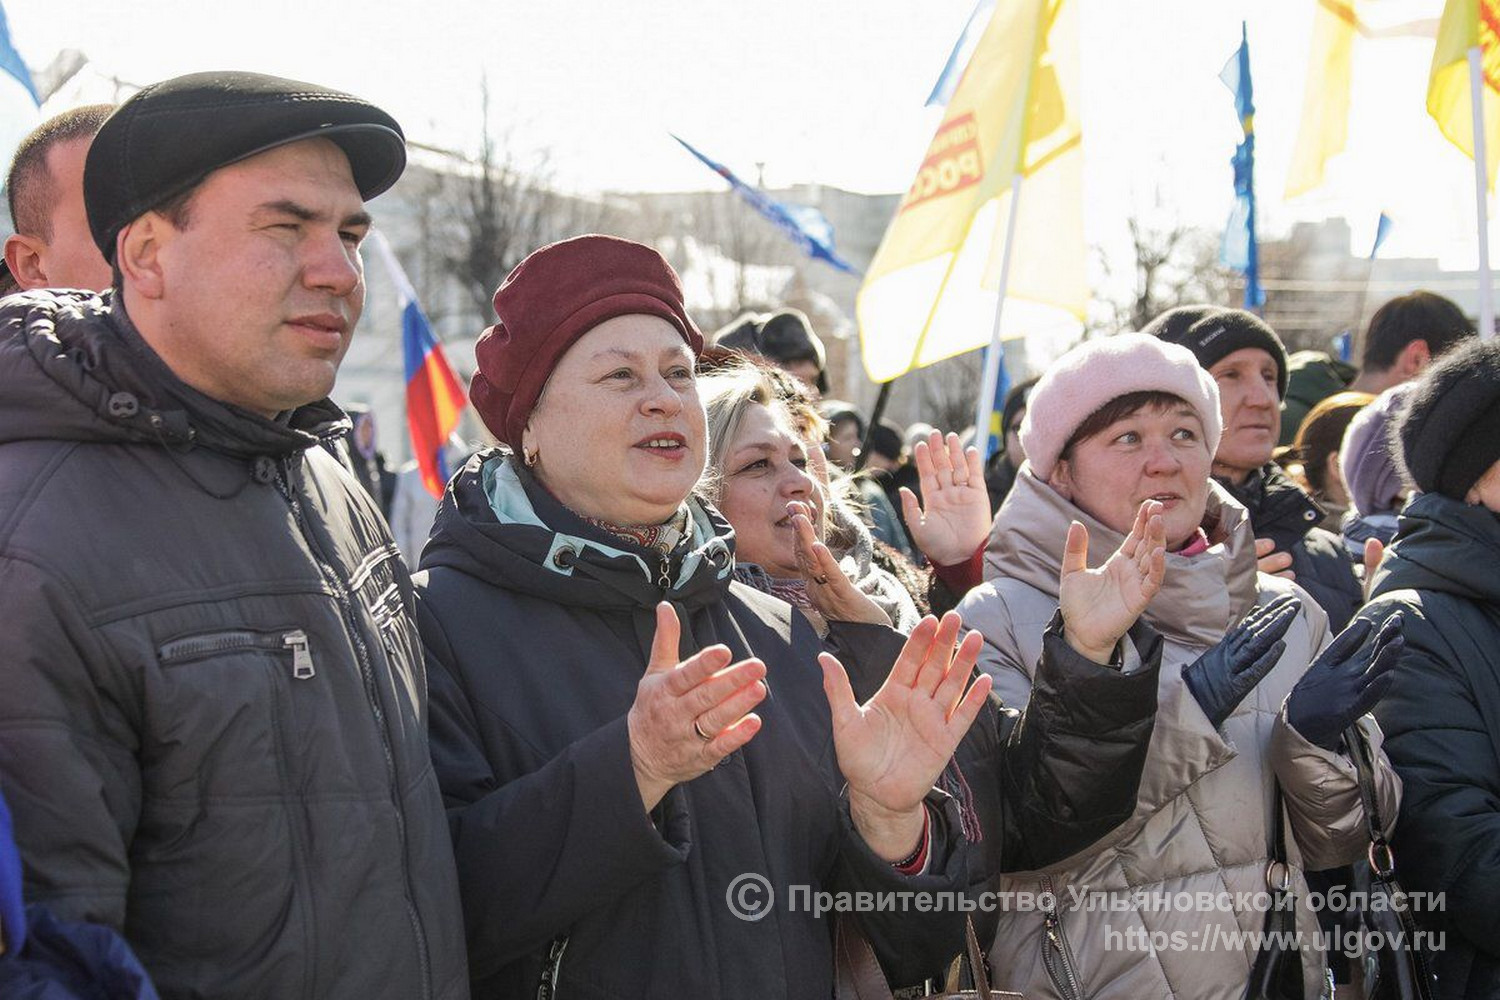 Последние новости в ульяновске на сегодня. Митинг в Ульяновске сегодня. Собрание на Соборной площади. Фото митинга в Ульяновске.